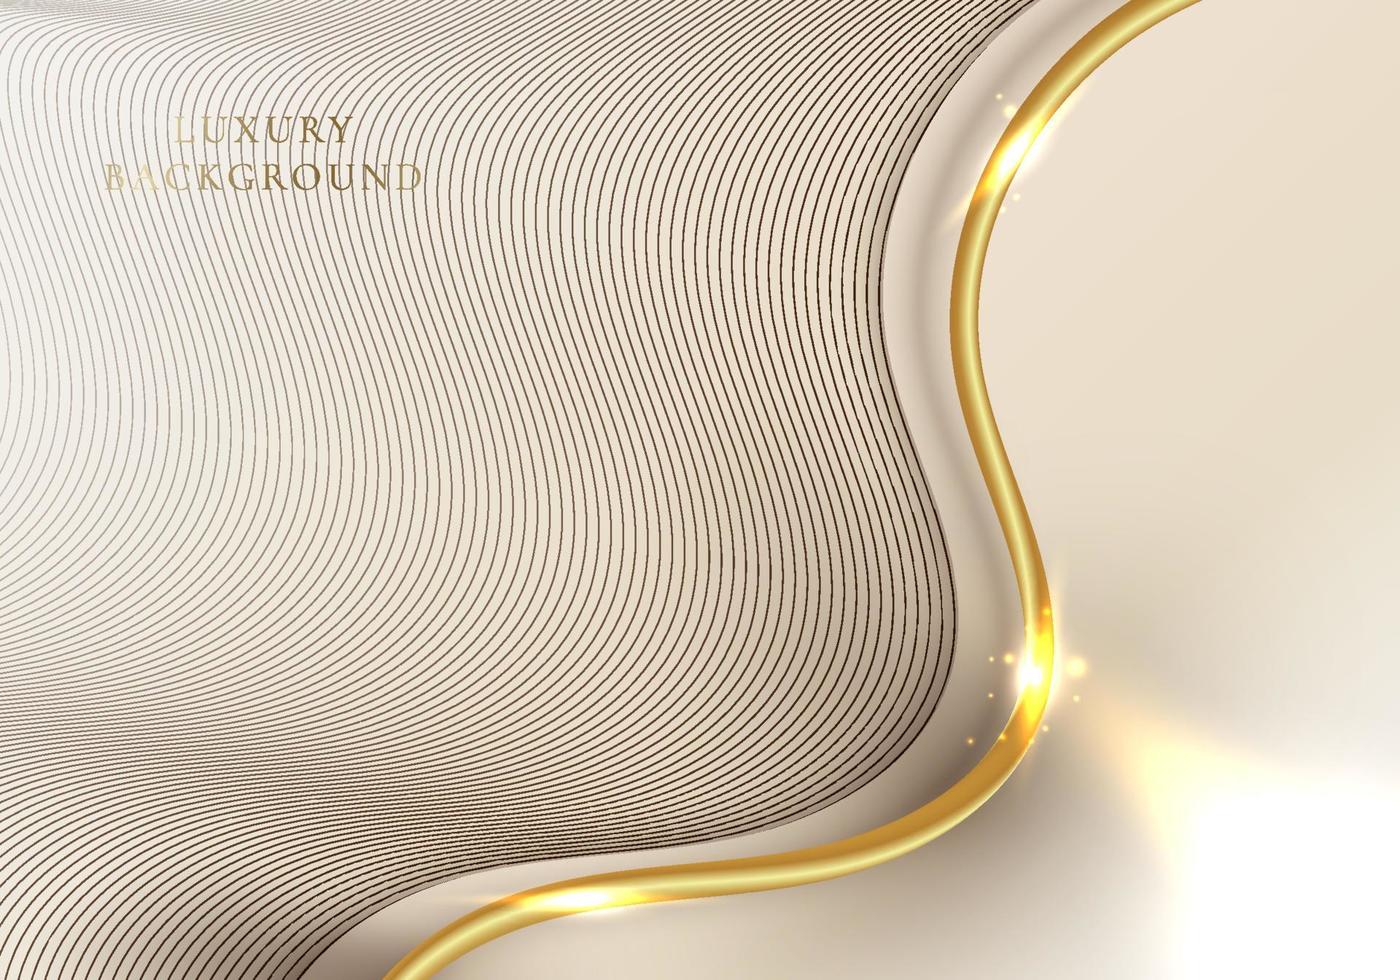 abstract elegant sjabloonontwerp 3d gouden golf gebogen lijnelementen met lichteffect vector